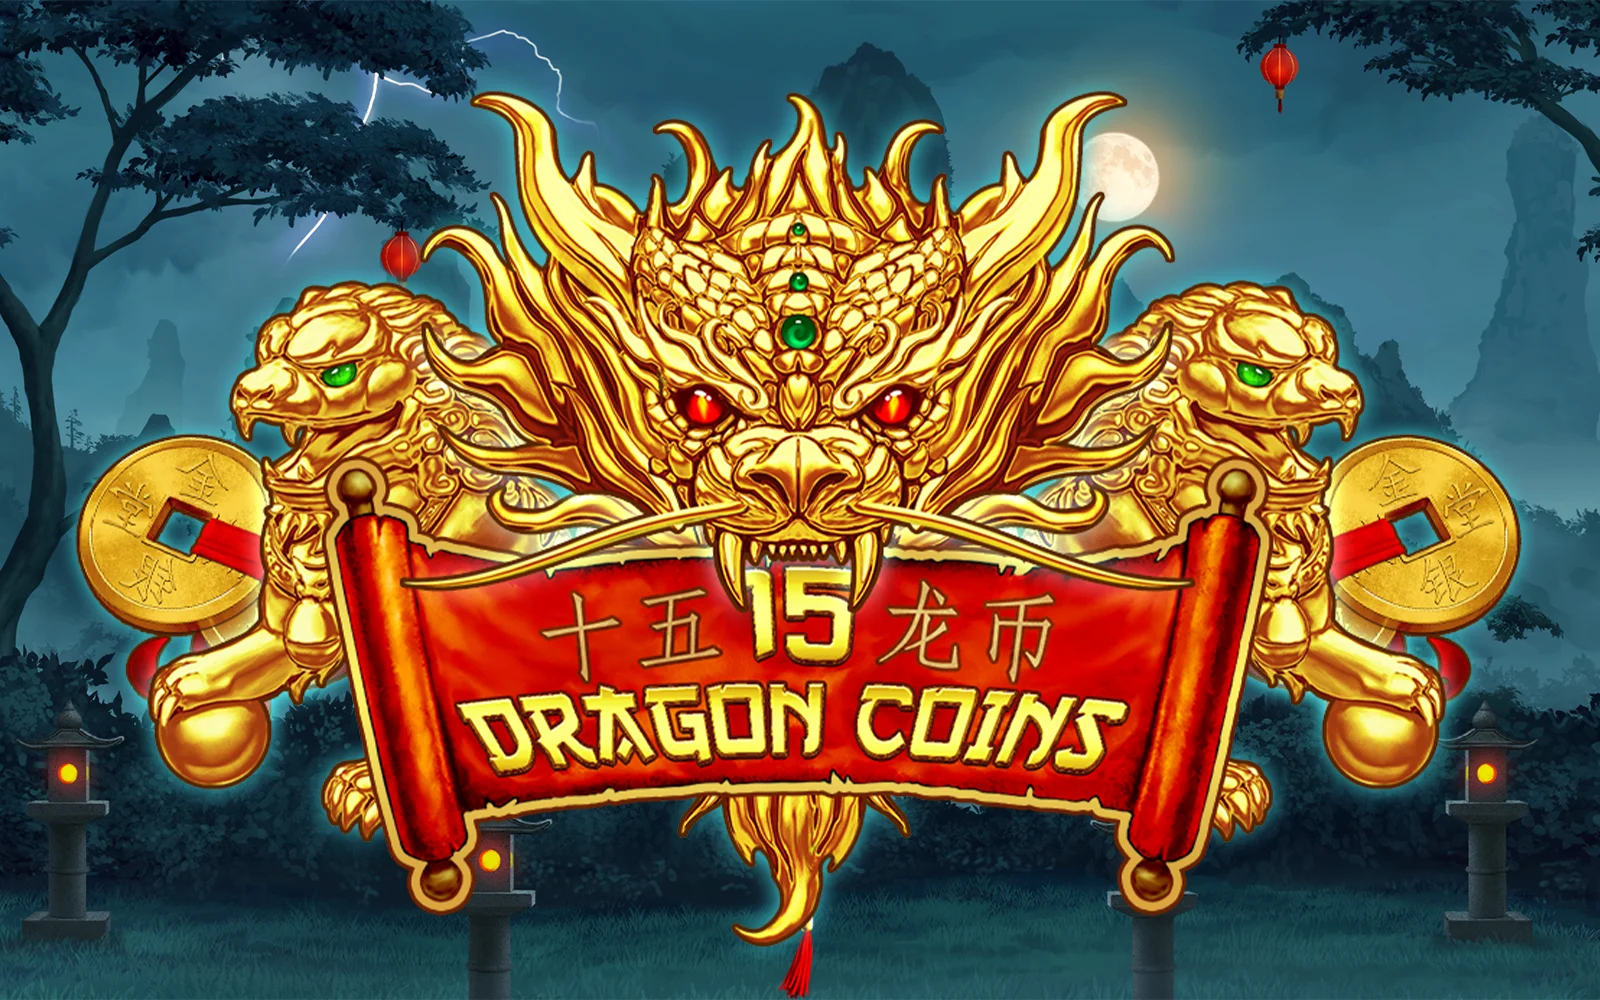 Jouer à 15 Dragon Coins sur le casino en ligne Starcasino.be